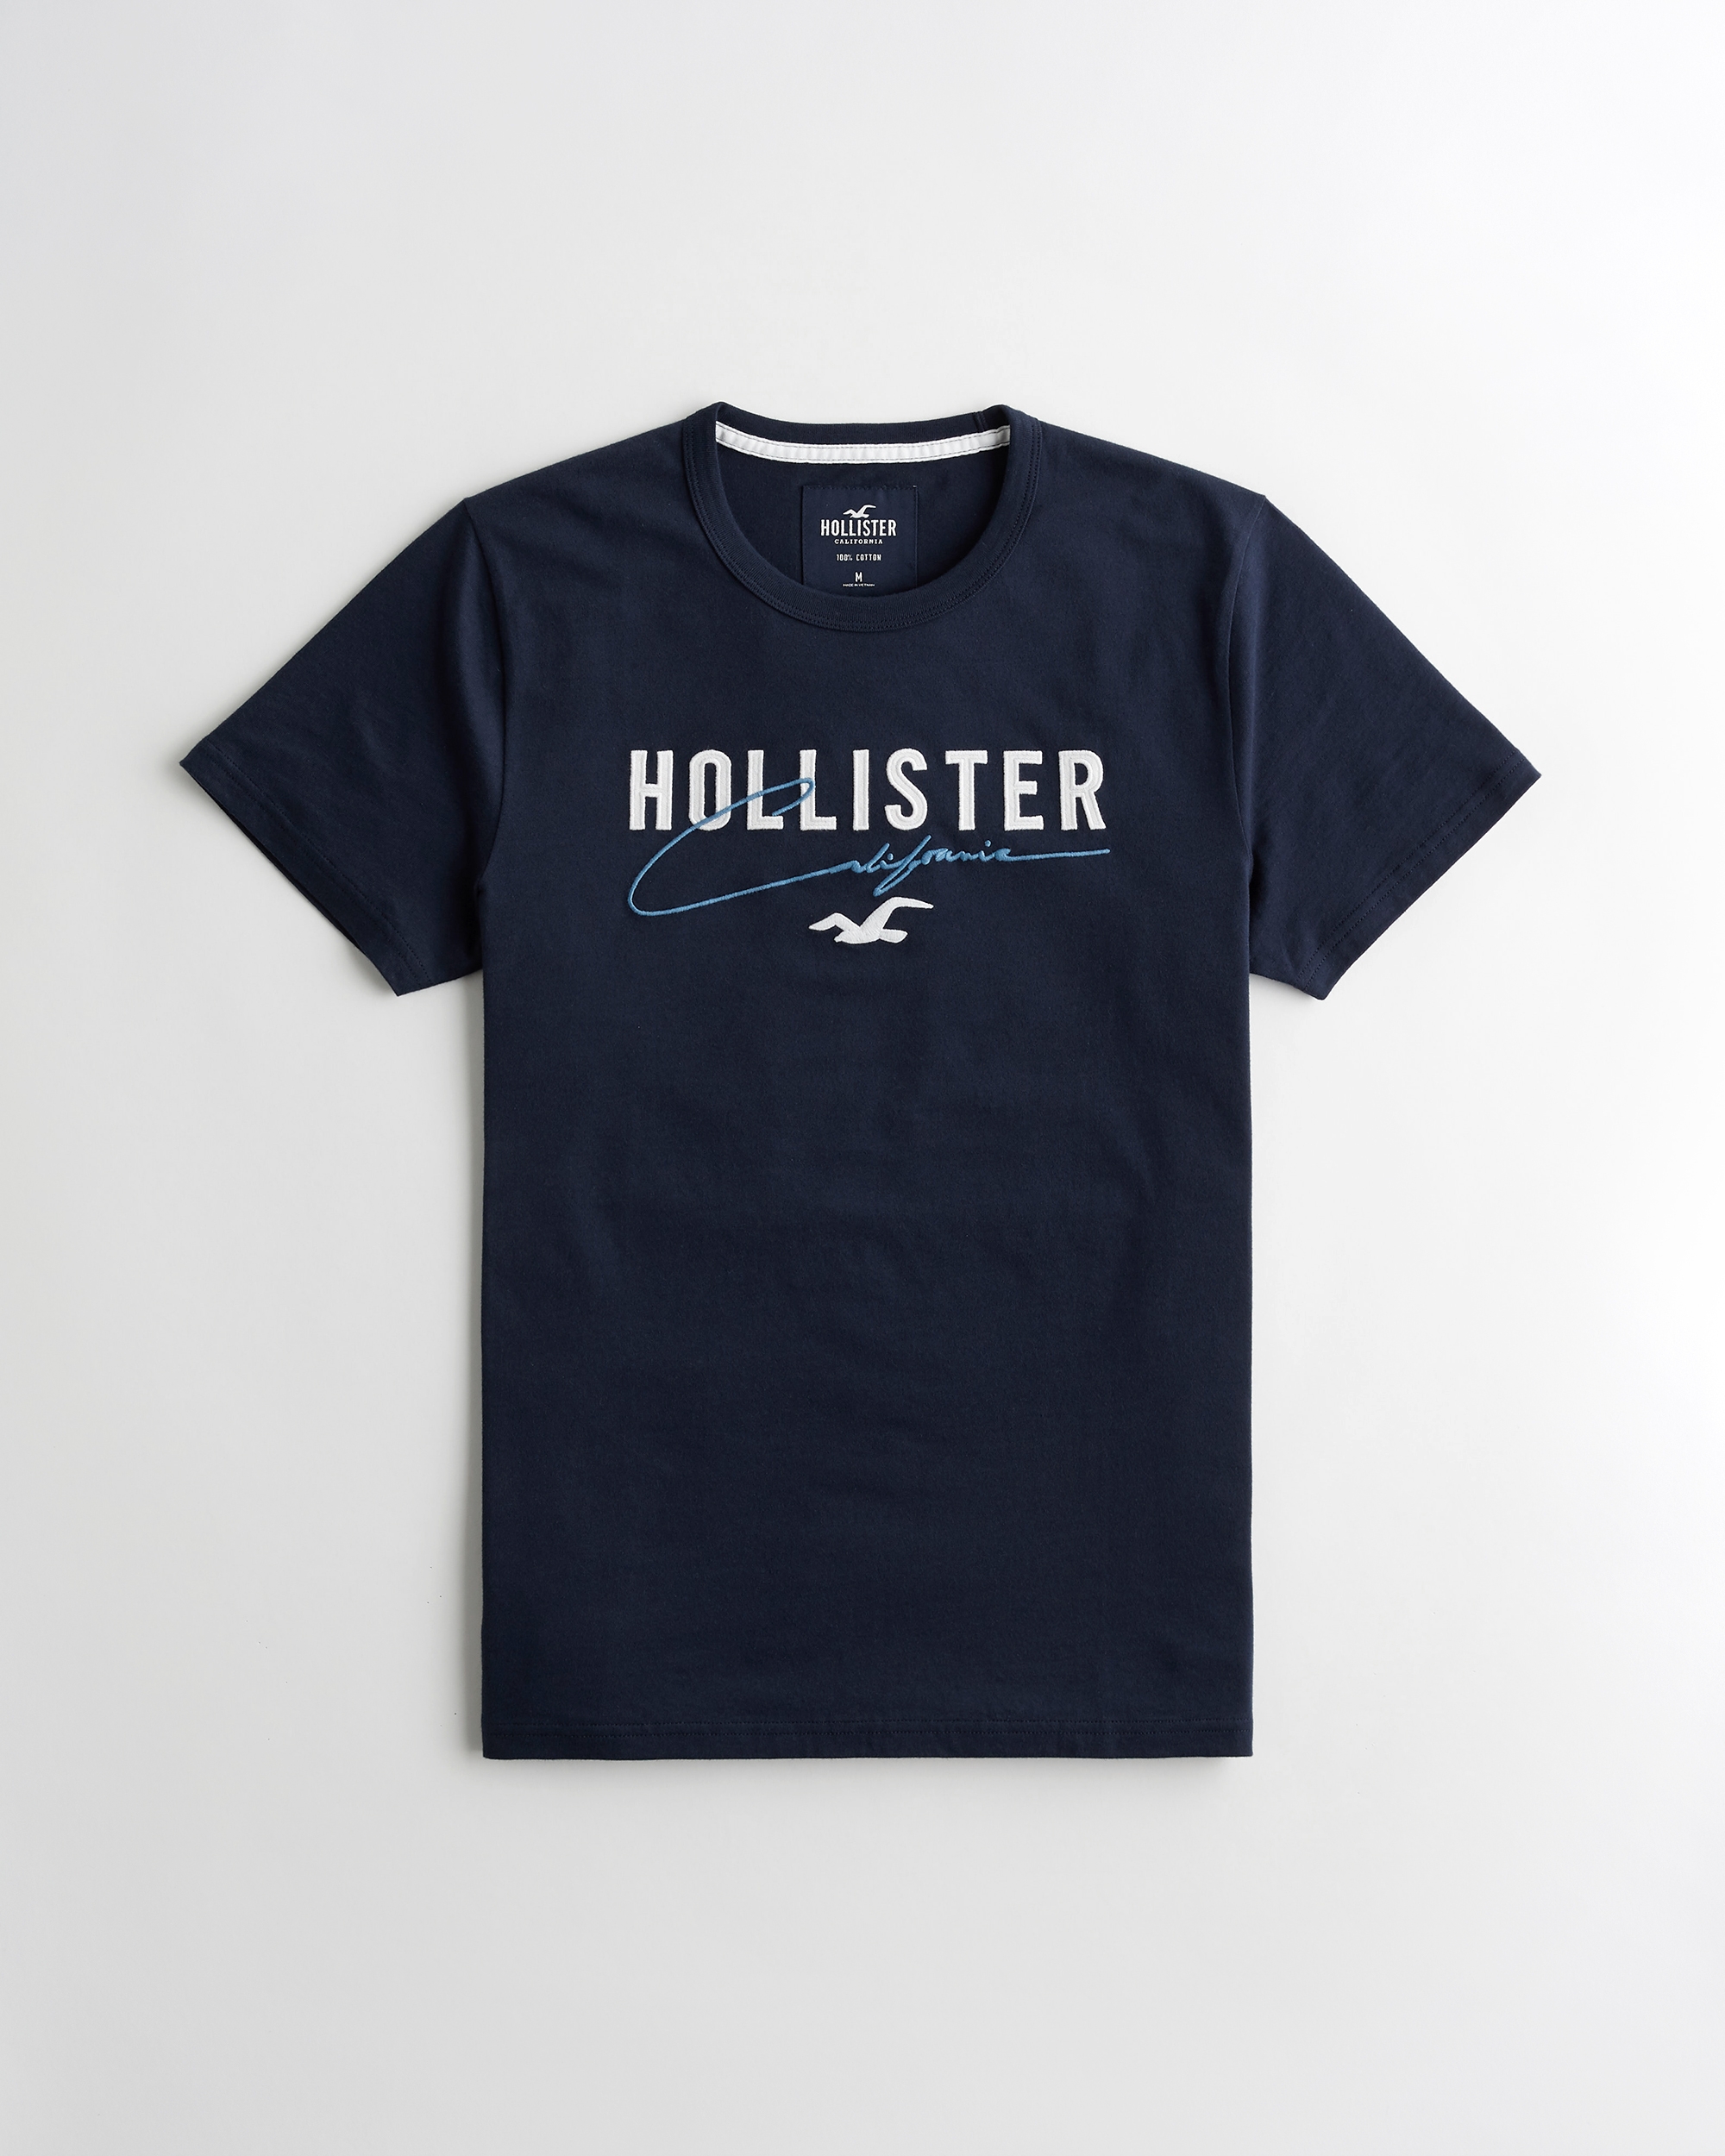 buy hollister t shirt